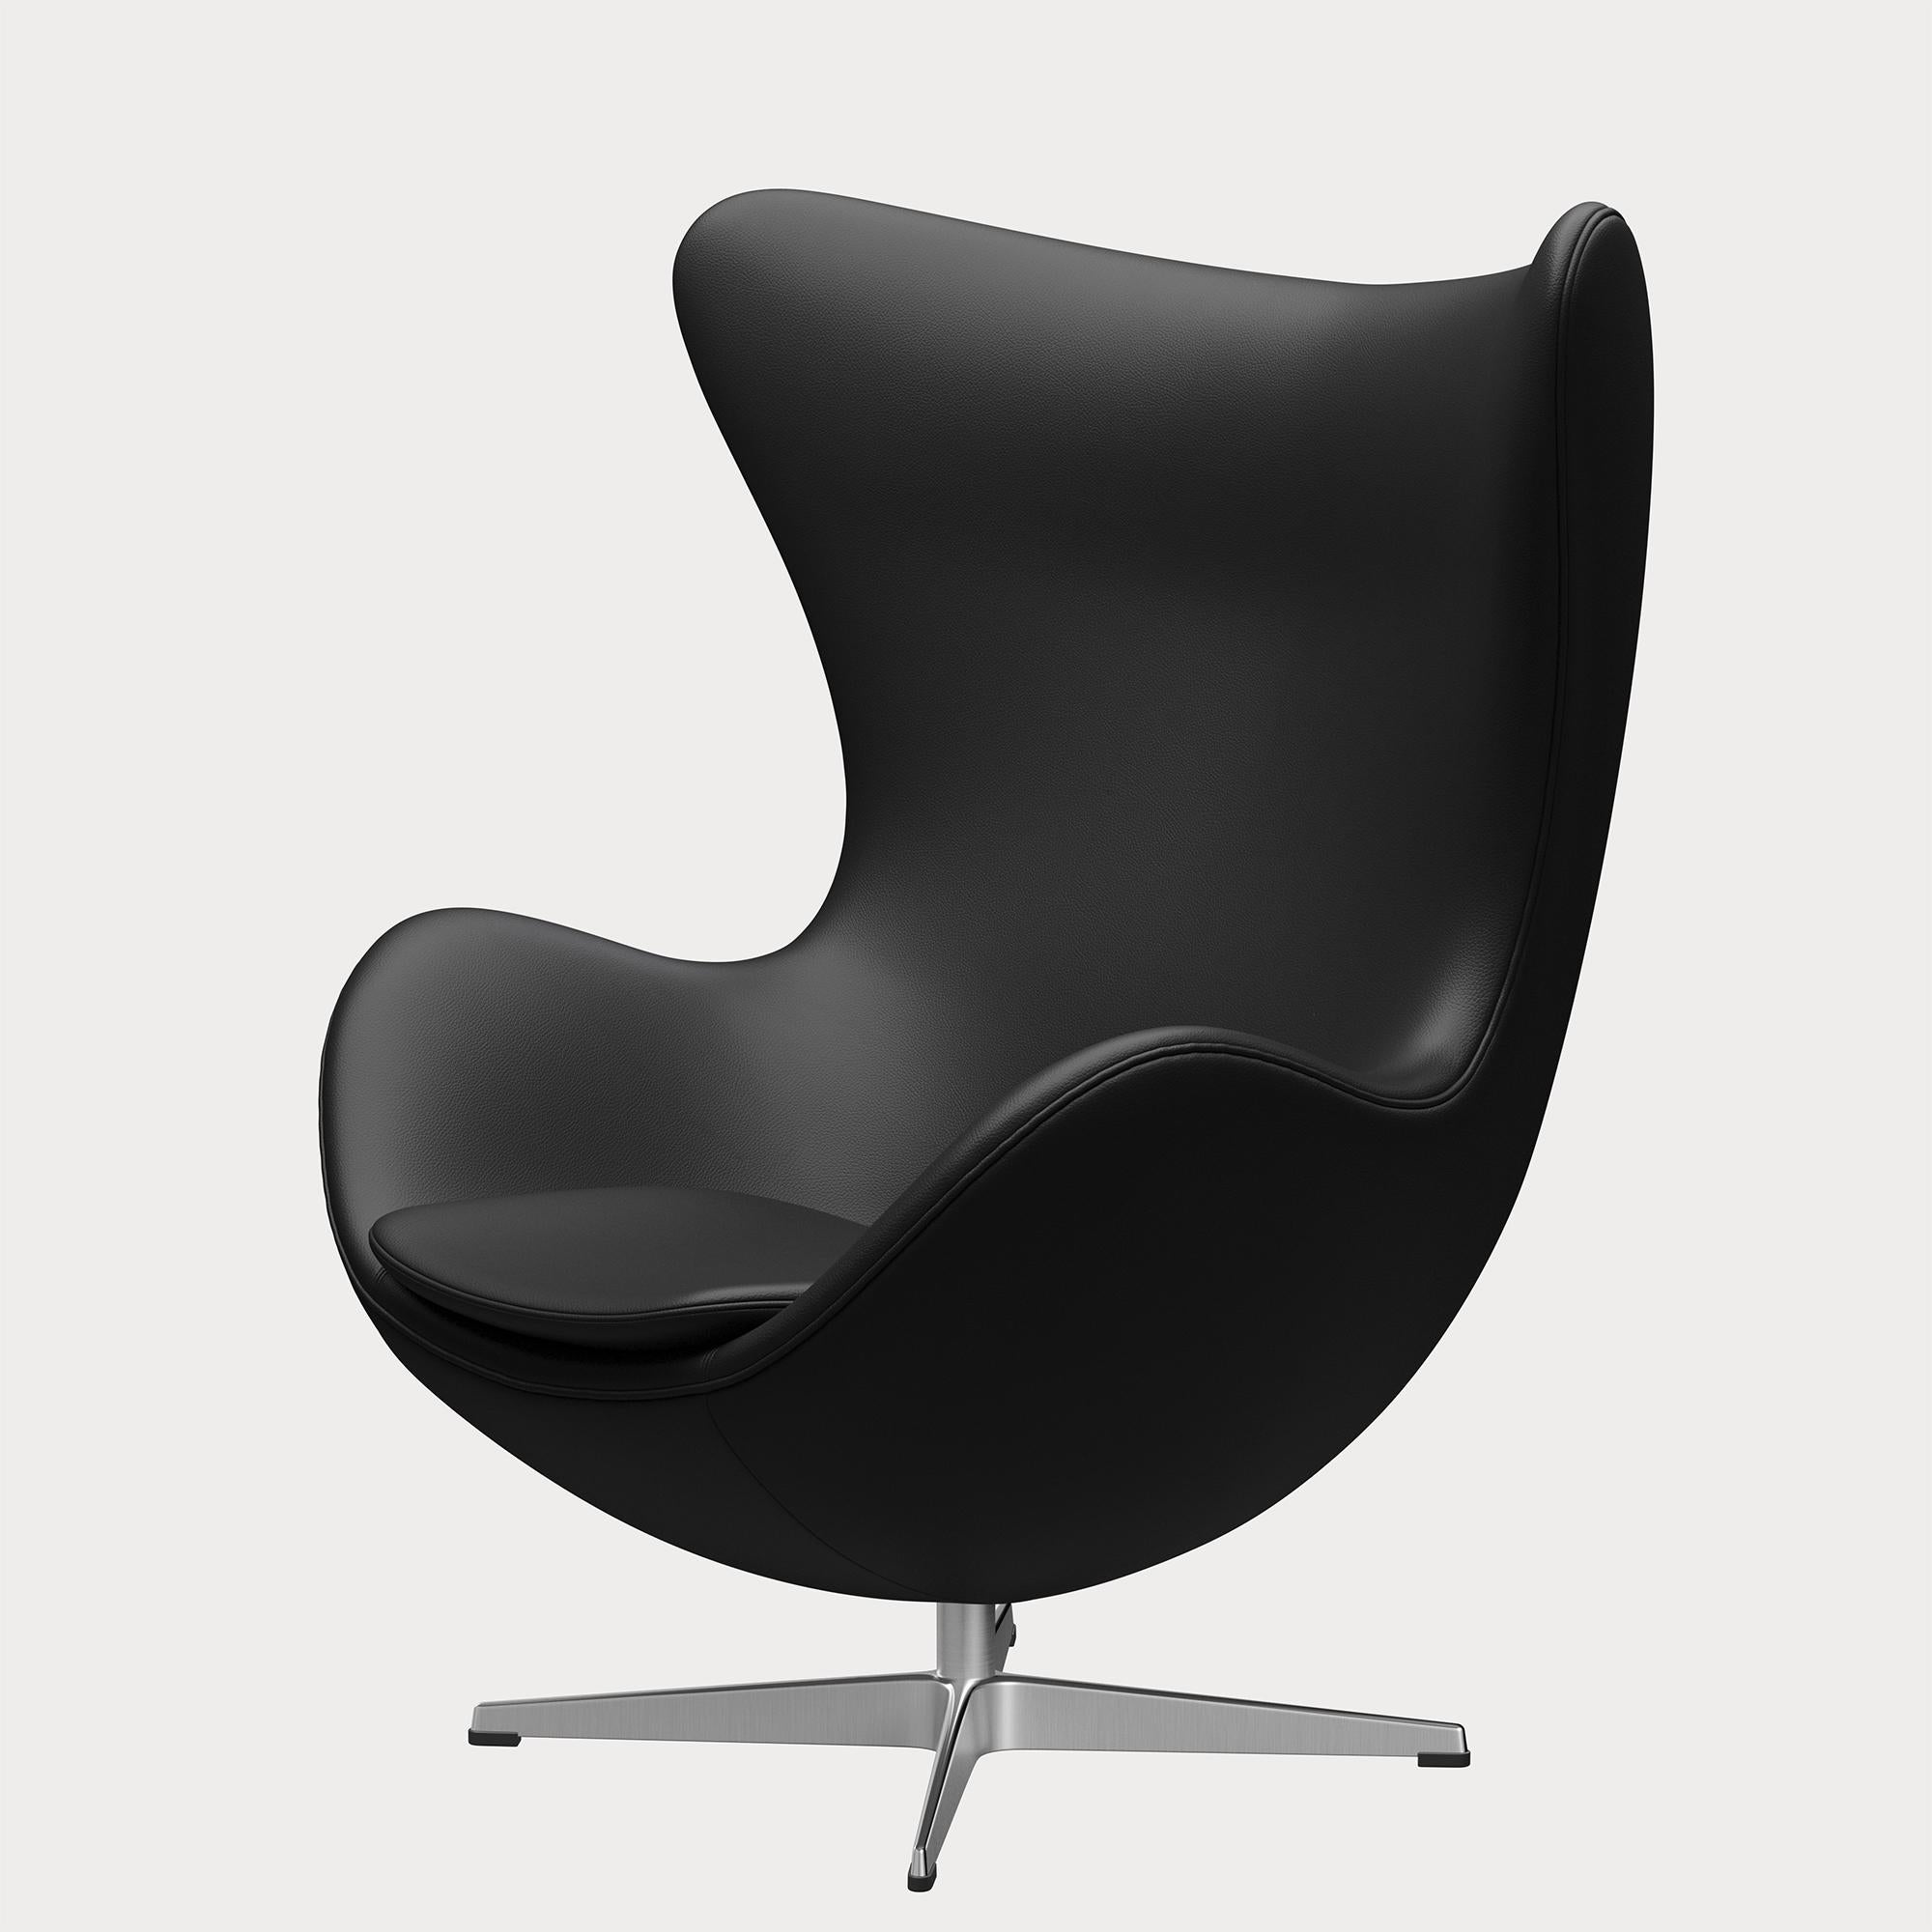 Arne Jacobsen 'Egg' Chair for Fritz Hansen in Leather Upholstery (Cat. 4) For Sale 1